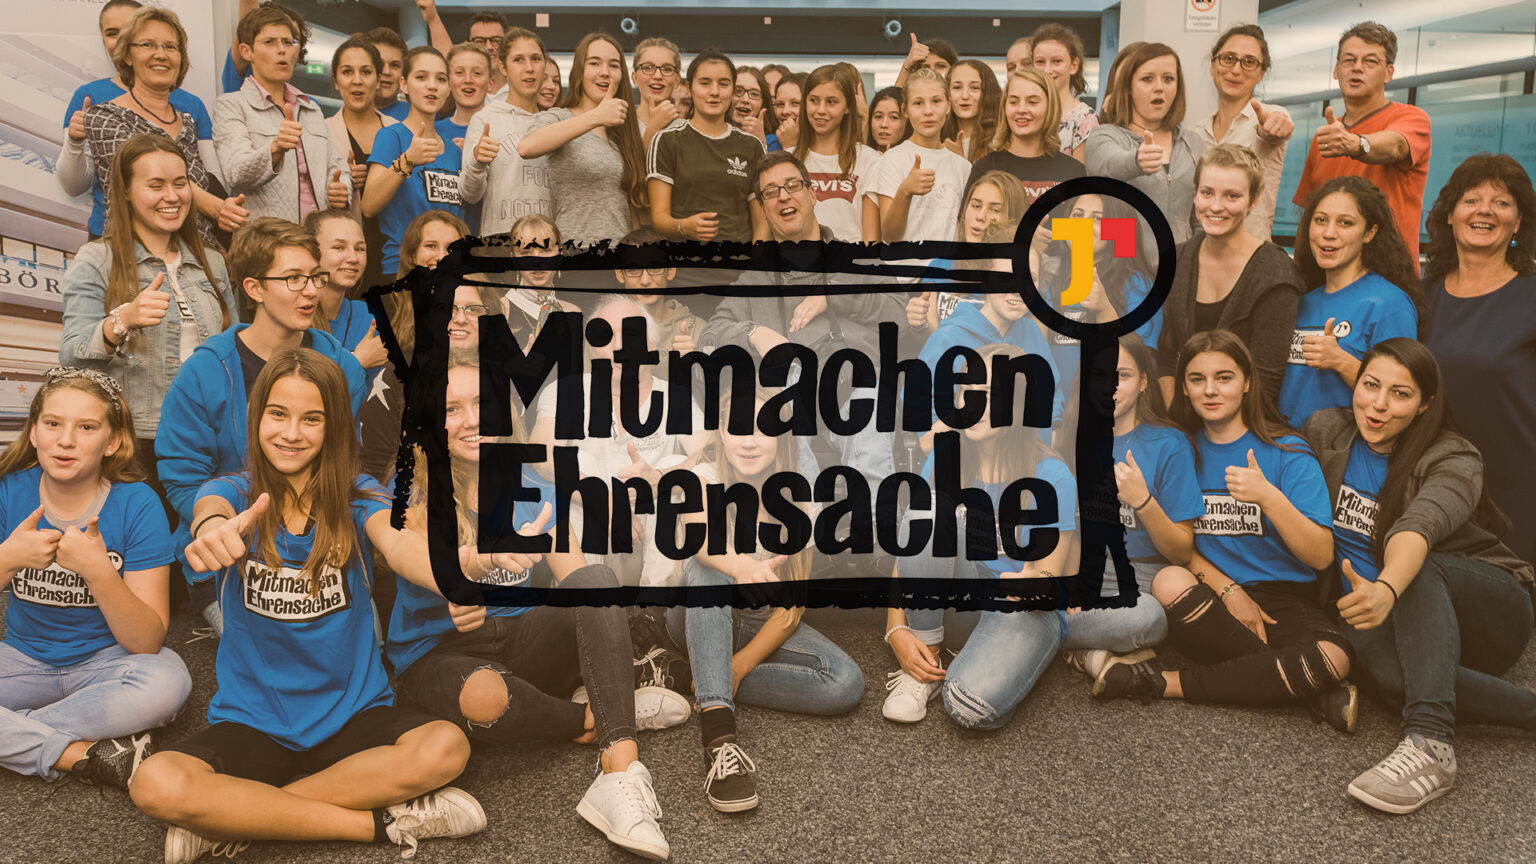 30.11.2021: Mitmachen ist Ehrensache in Baden-Württemberg. Auch bei uns an der Werkrealschule Kißlegg! Ehrensache!